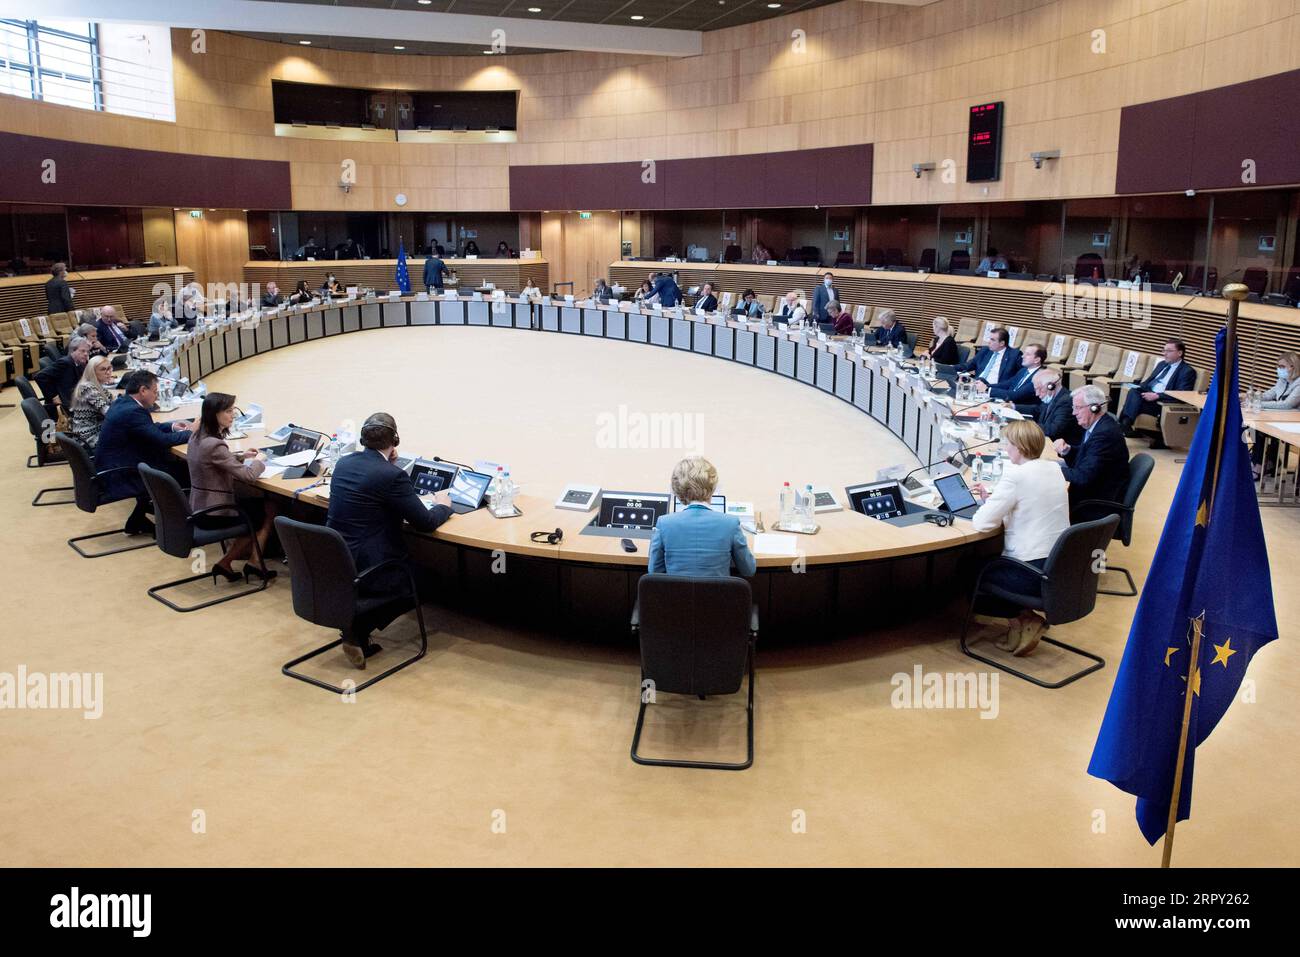 200610 -- BRUXELLES, 10 giugno 2020 Xinhua -- foto scattata il 10 giugno 2020 mostra una riunione dei commissari europei a Bruxelles, in Belgio. La Commissione europea proporrà nel corso di questa settimana un approccio per la graduale e parziale revoca delle restrizioni ai viaggi esterni della zona Schengen a partire dal 1° luglio con alcuni paesi terzi, Josep Borrell, alto rappresentante dell'Unione europea per gli affari esteri e la politica di sicurezza, ha detto qui mercoledì. Unione europea/dispensa via Xinhua BELGIUM-BRUSSELS-EU-ENTRY BANS-GRADUALE E PARZIALE REVOCA PUBLICATIONxNOTxINxCHN Foto Stock